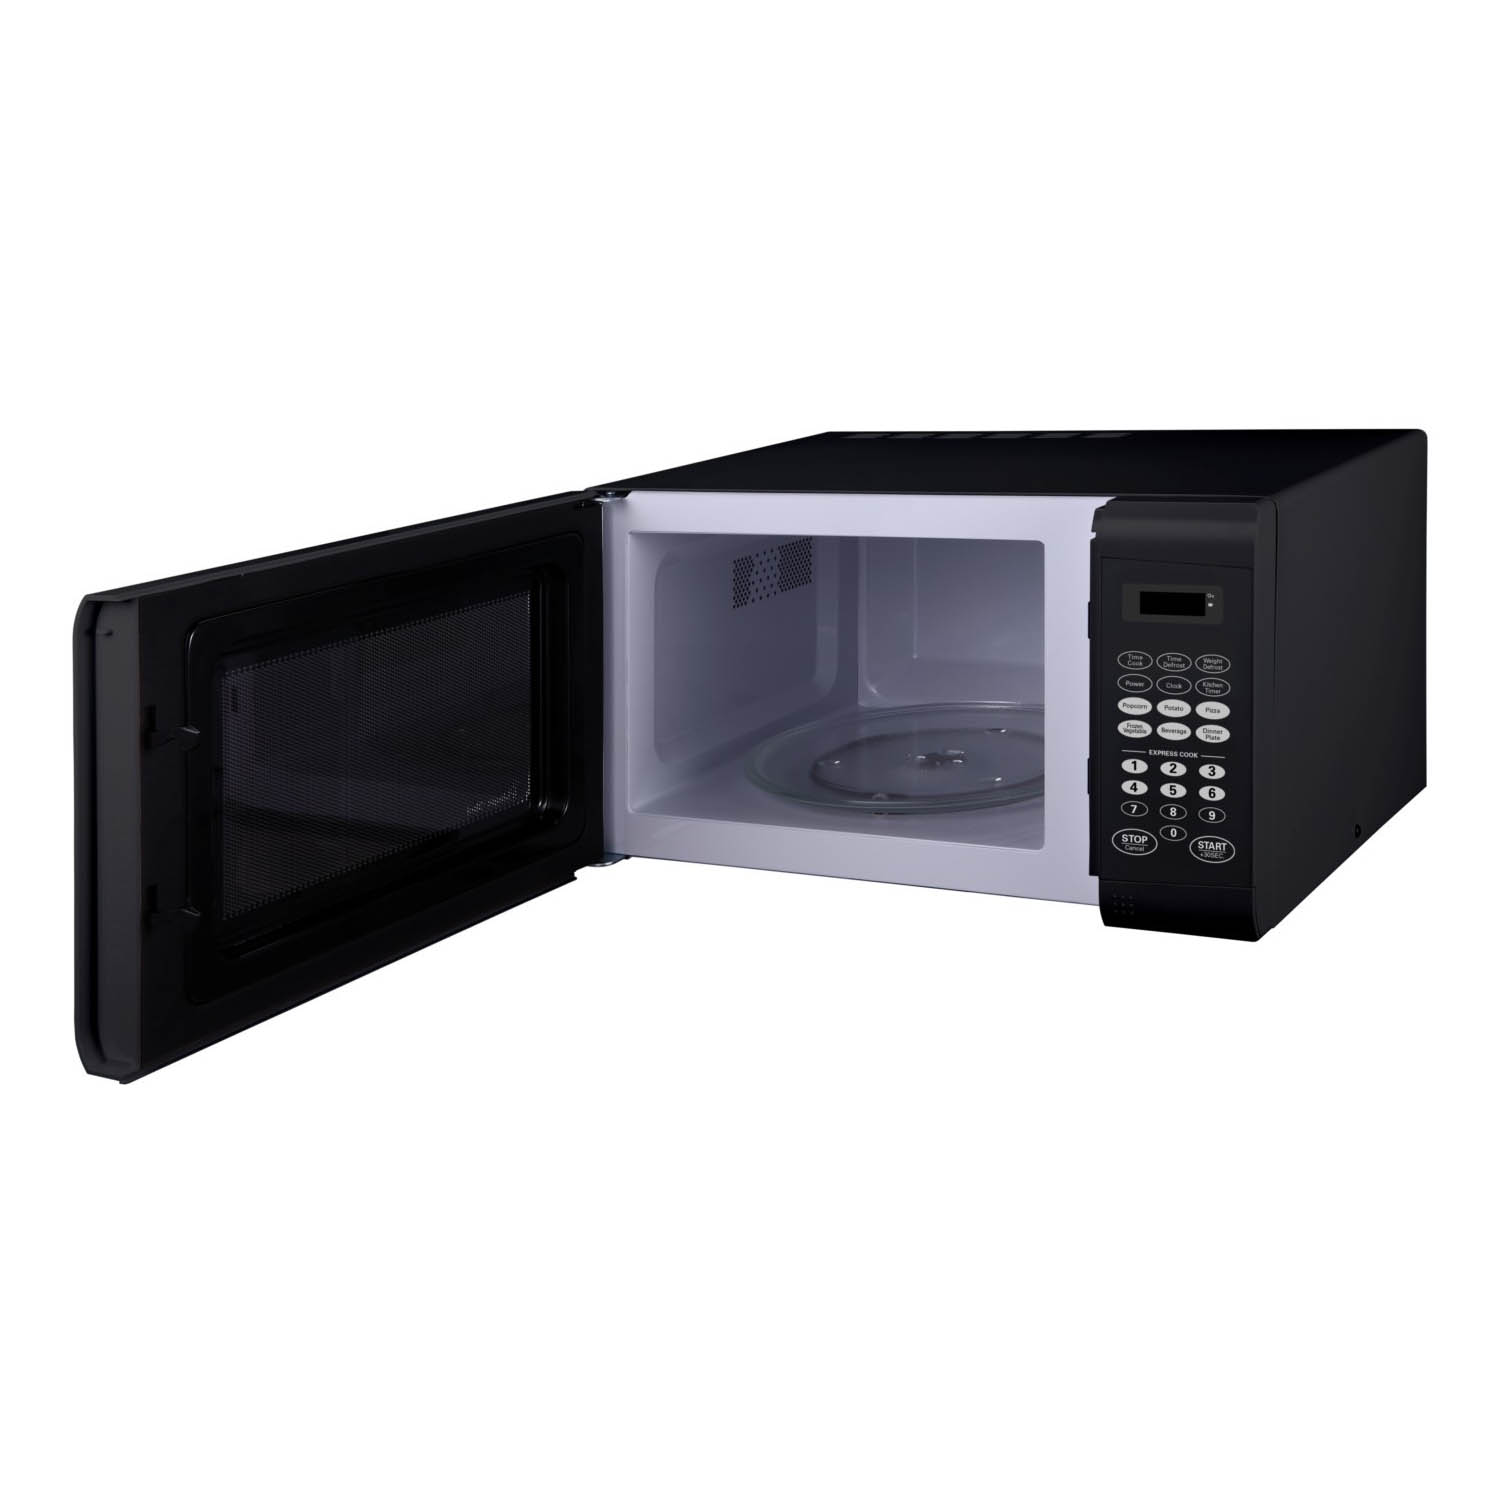 900 Watt Microwave in Black - image 2 of 4